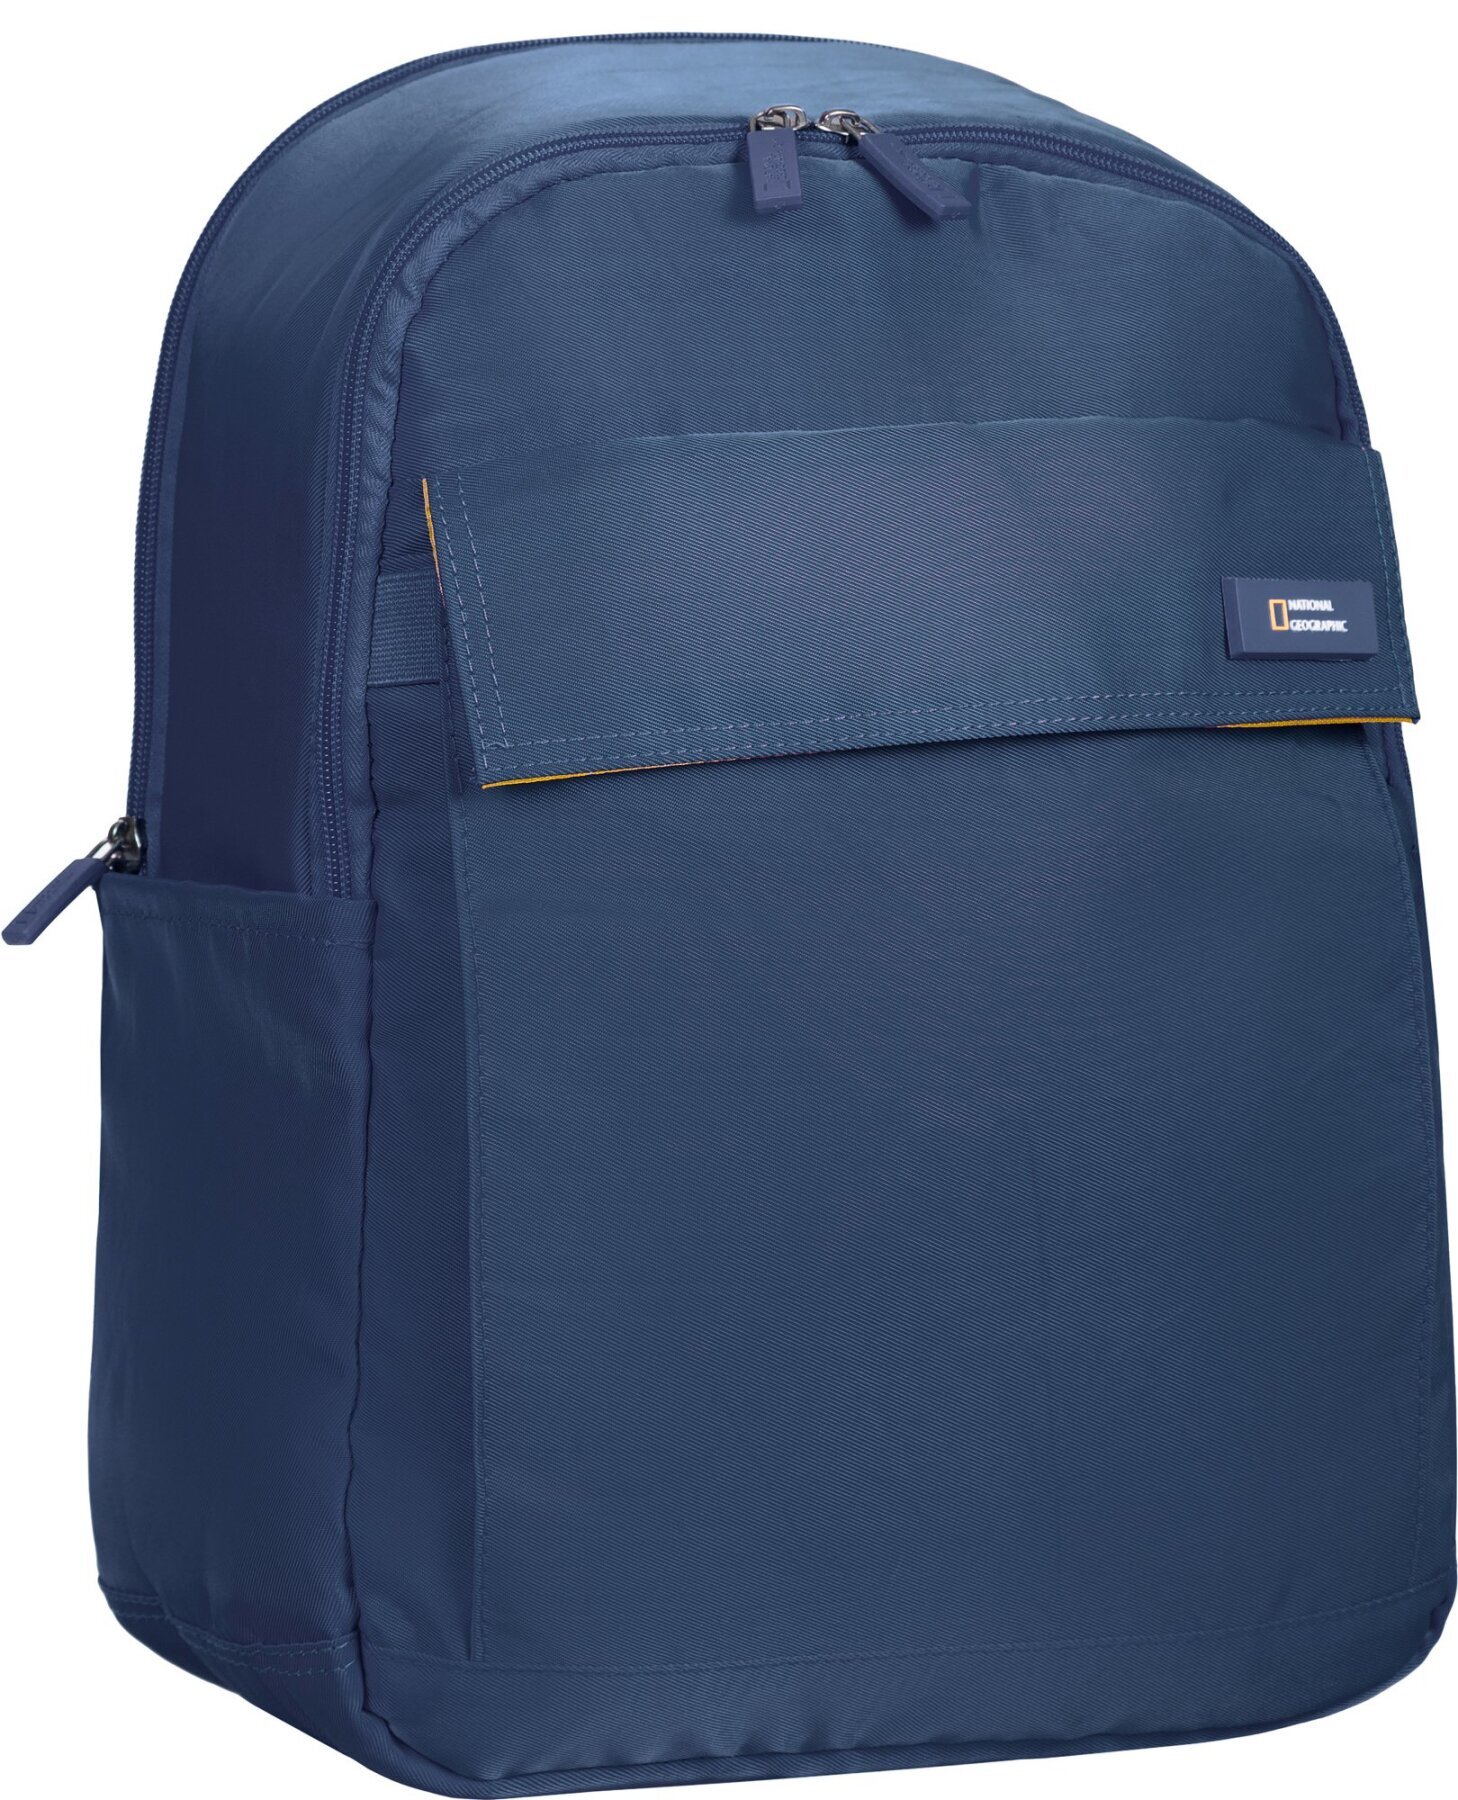 Рюкзак повсякденний з відділенням для ноутбука National Geographic Academy N13911;49 синій